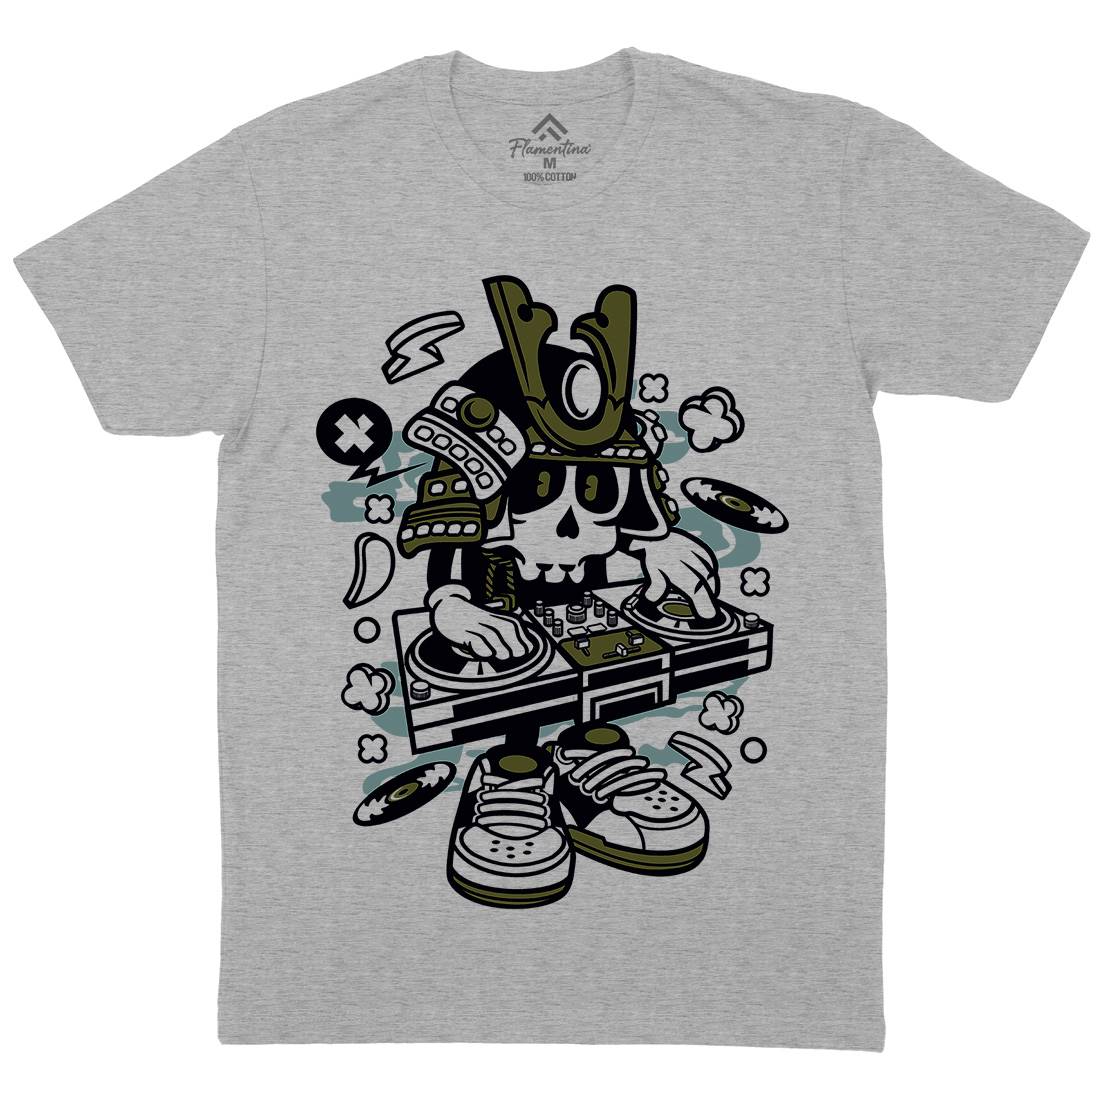 Samurai Dj Mens Crew Neck T-Shirt Music C216